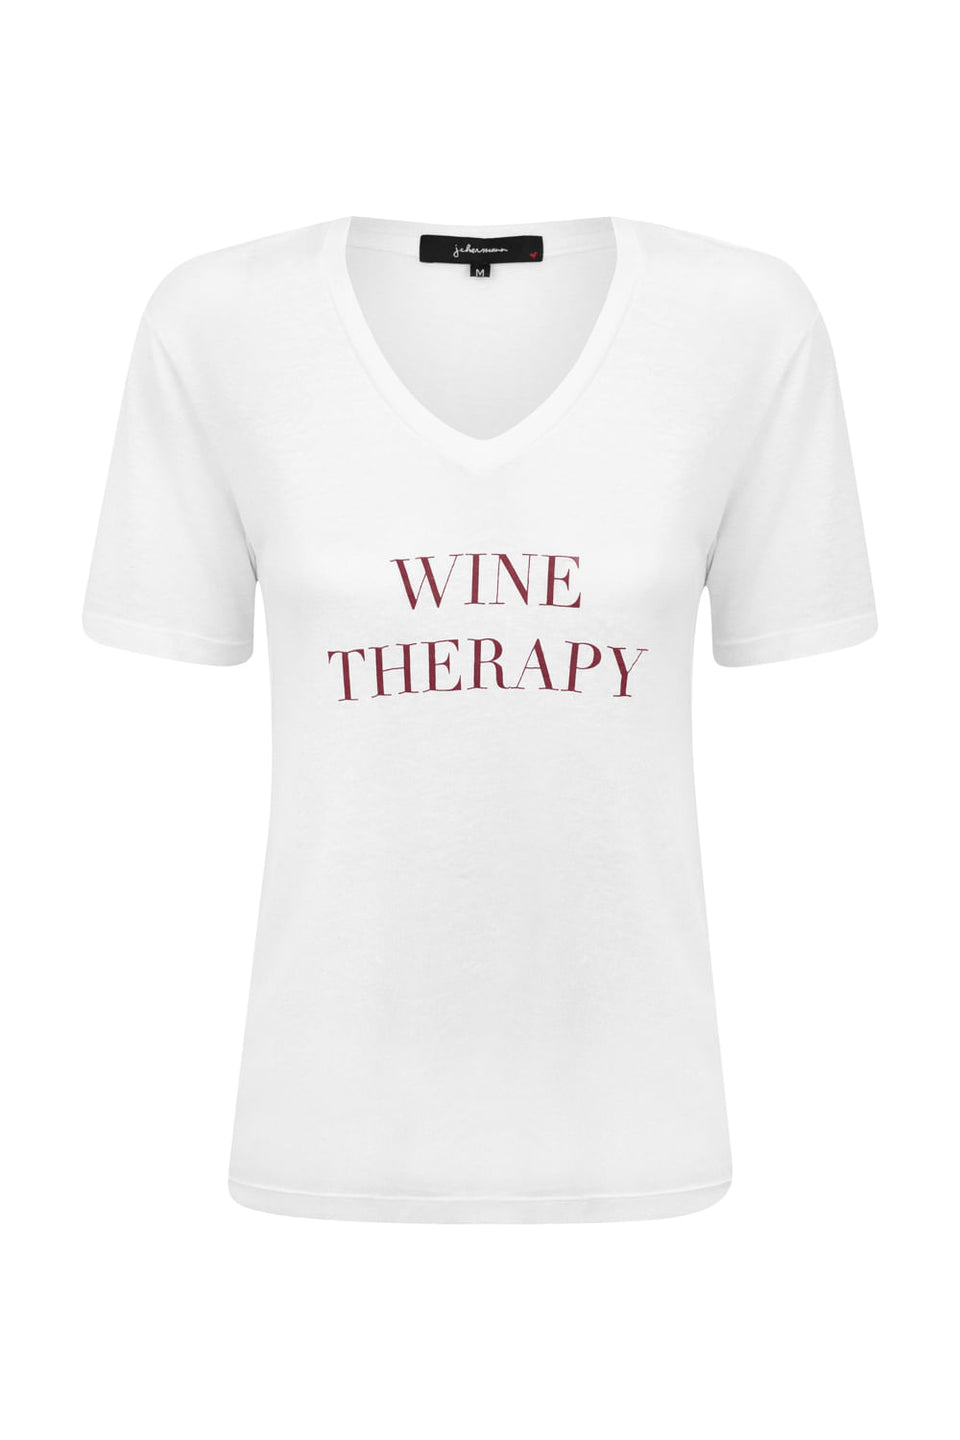 Camiseta Wine Therapy Branco